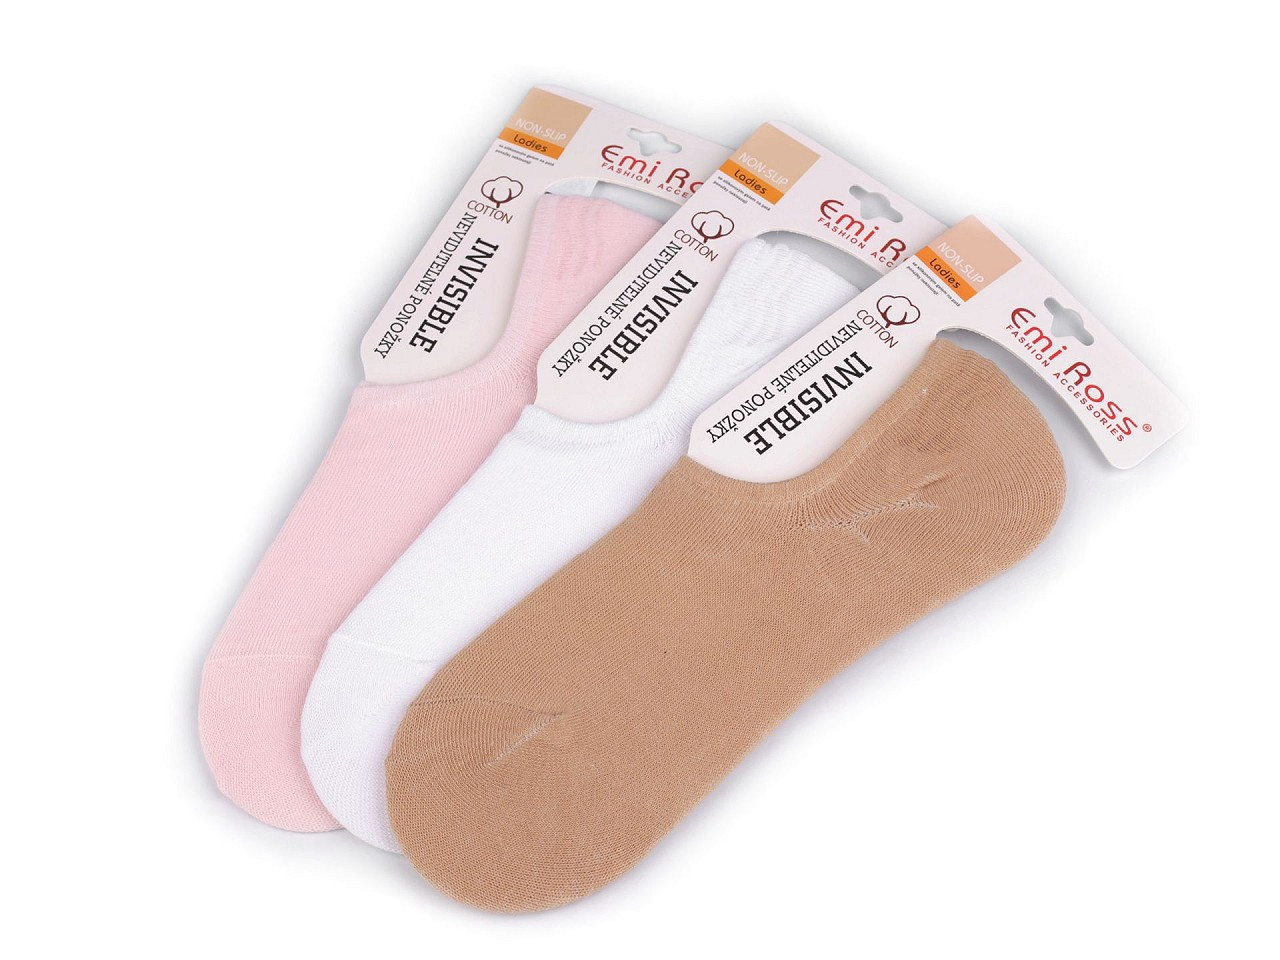 Dámské bavlněné ponožky do tenisek Emi Ross, barva 2 (vel. 39-42) mix